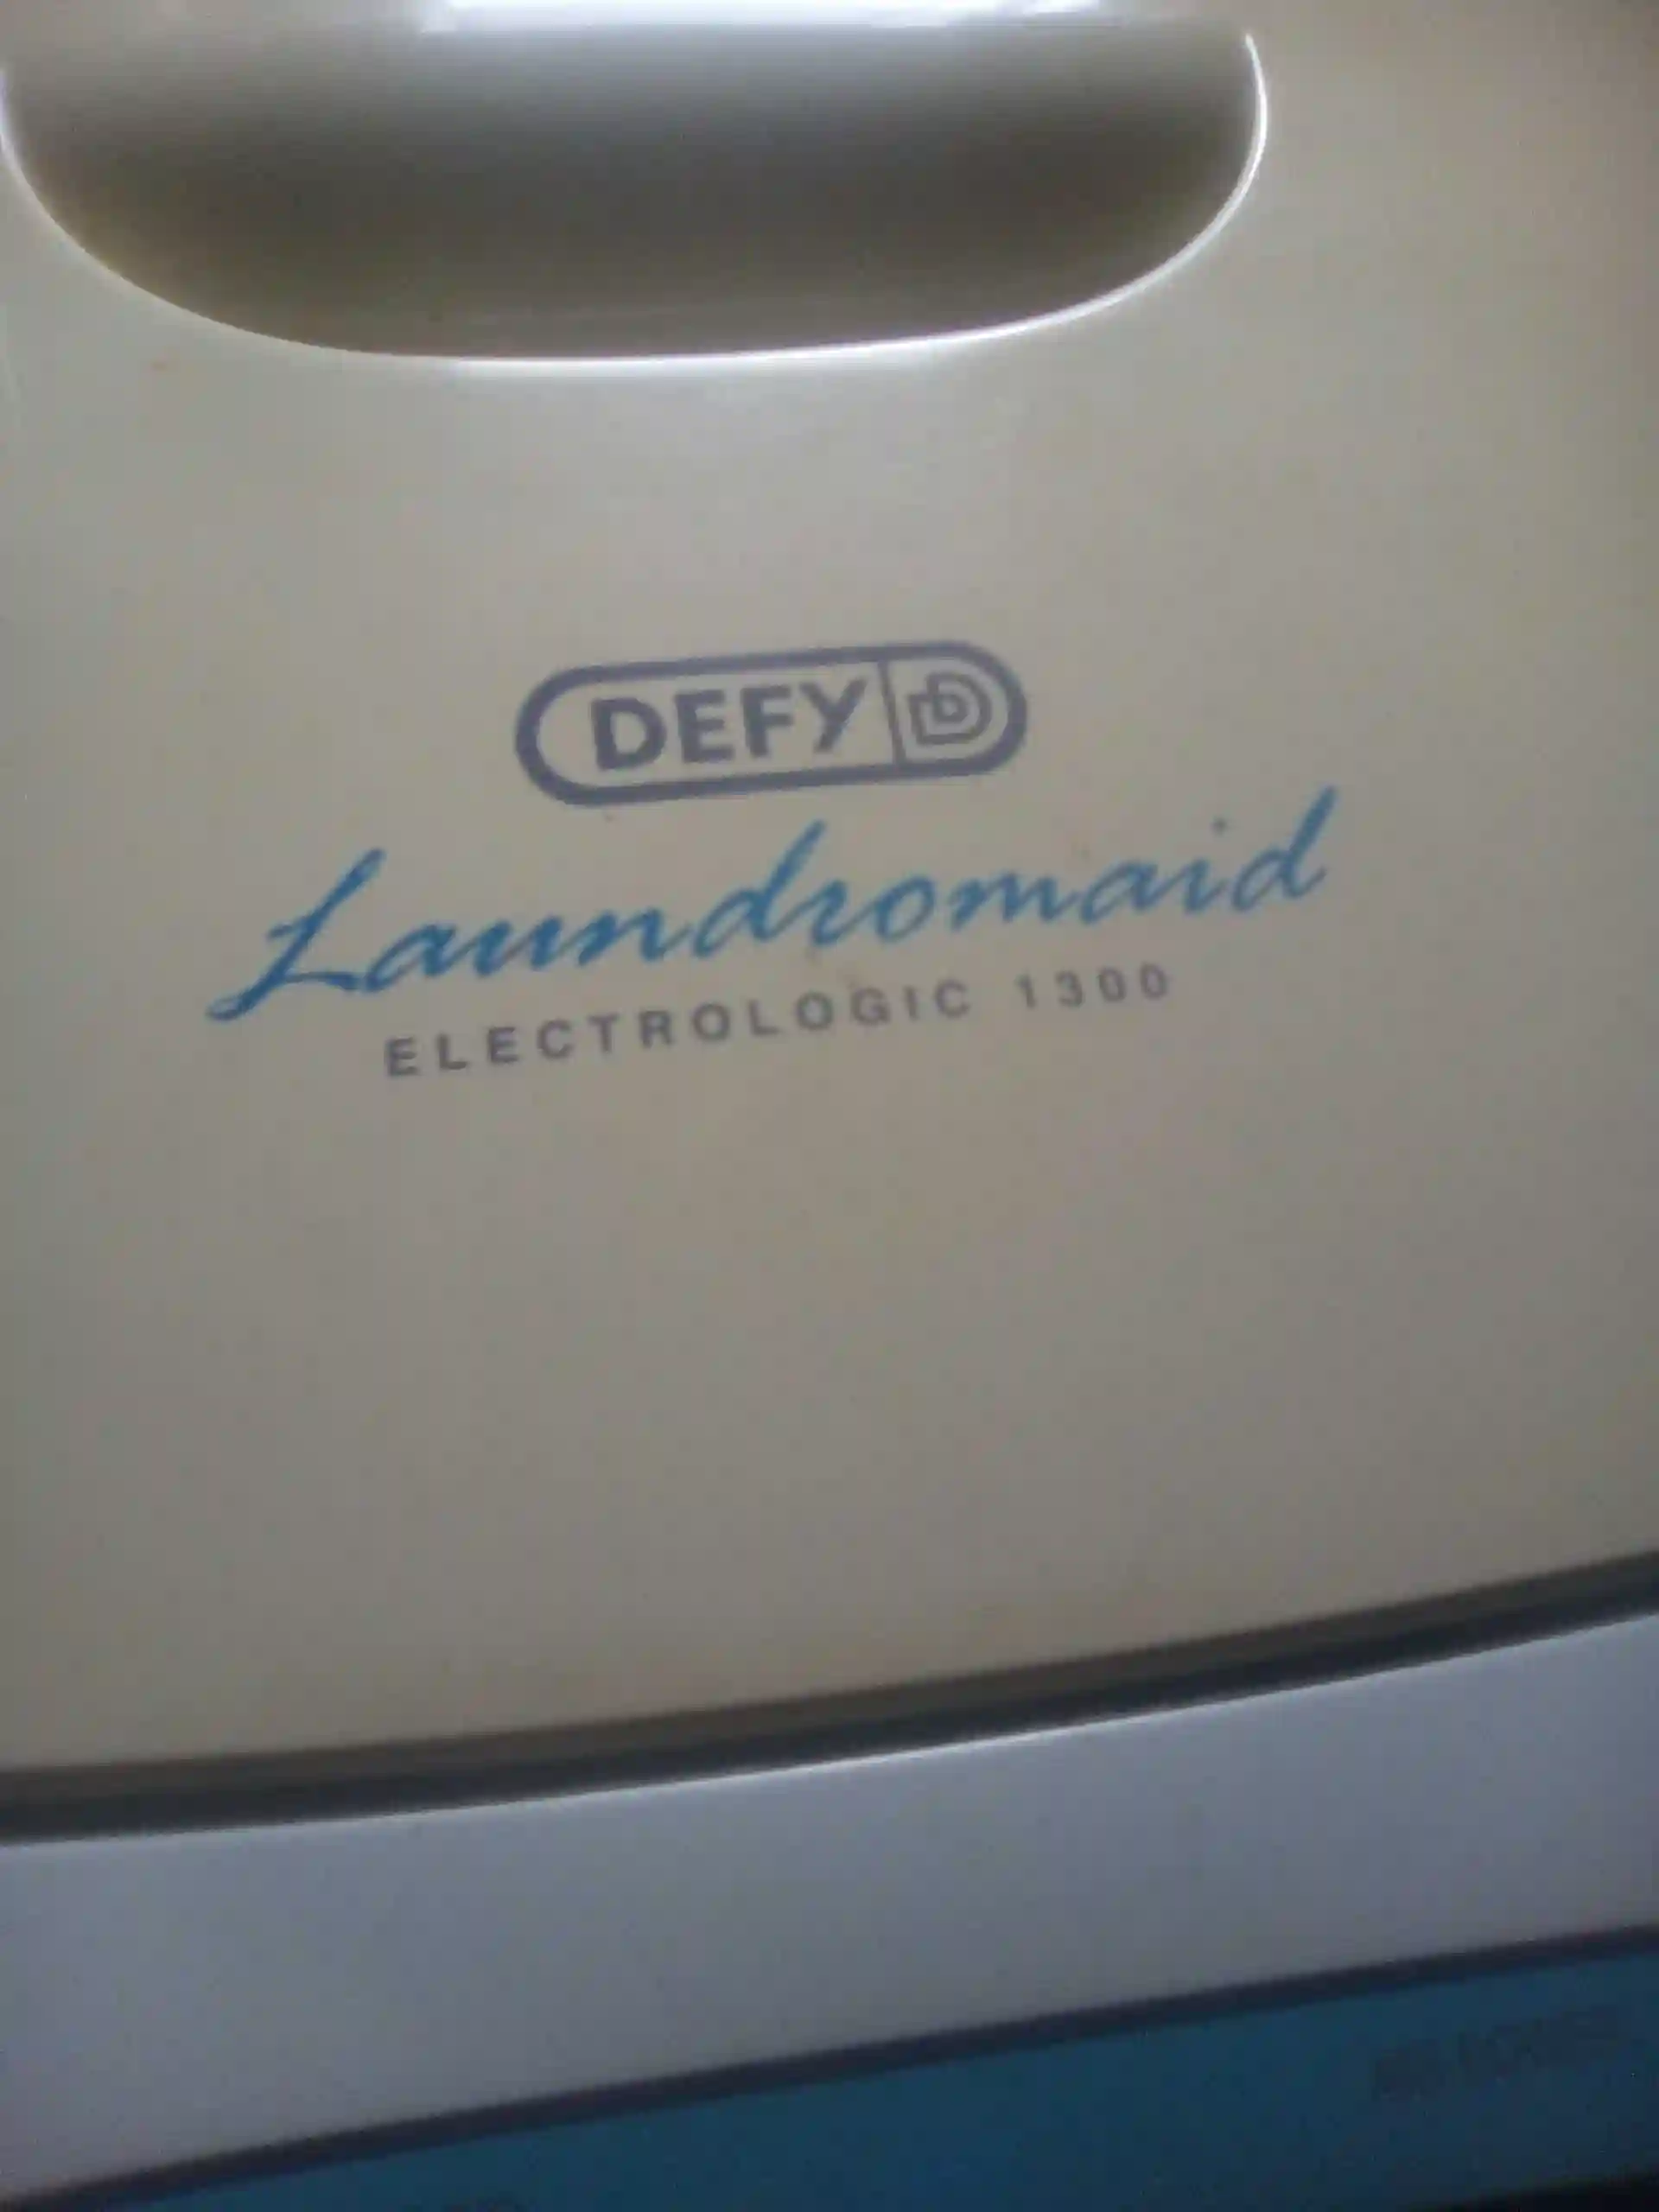 Defy laundromaid electrologic